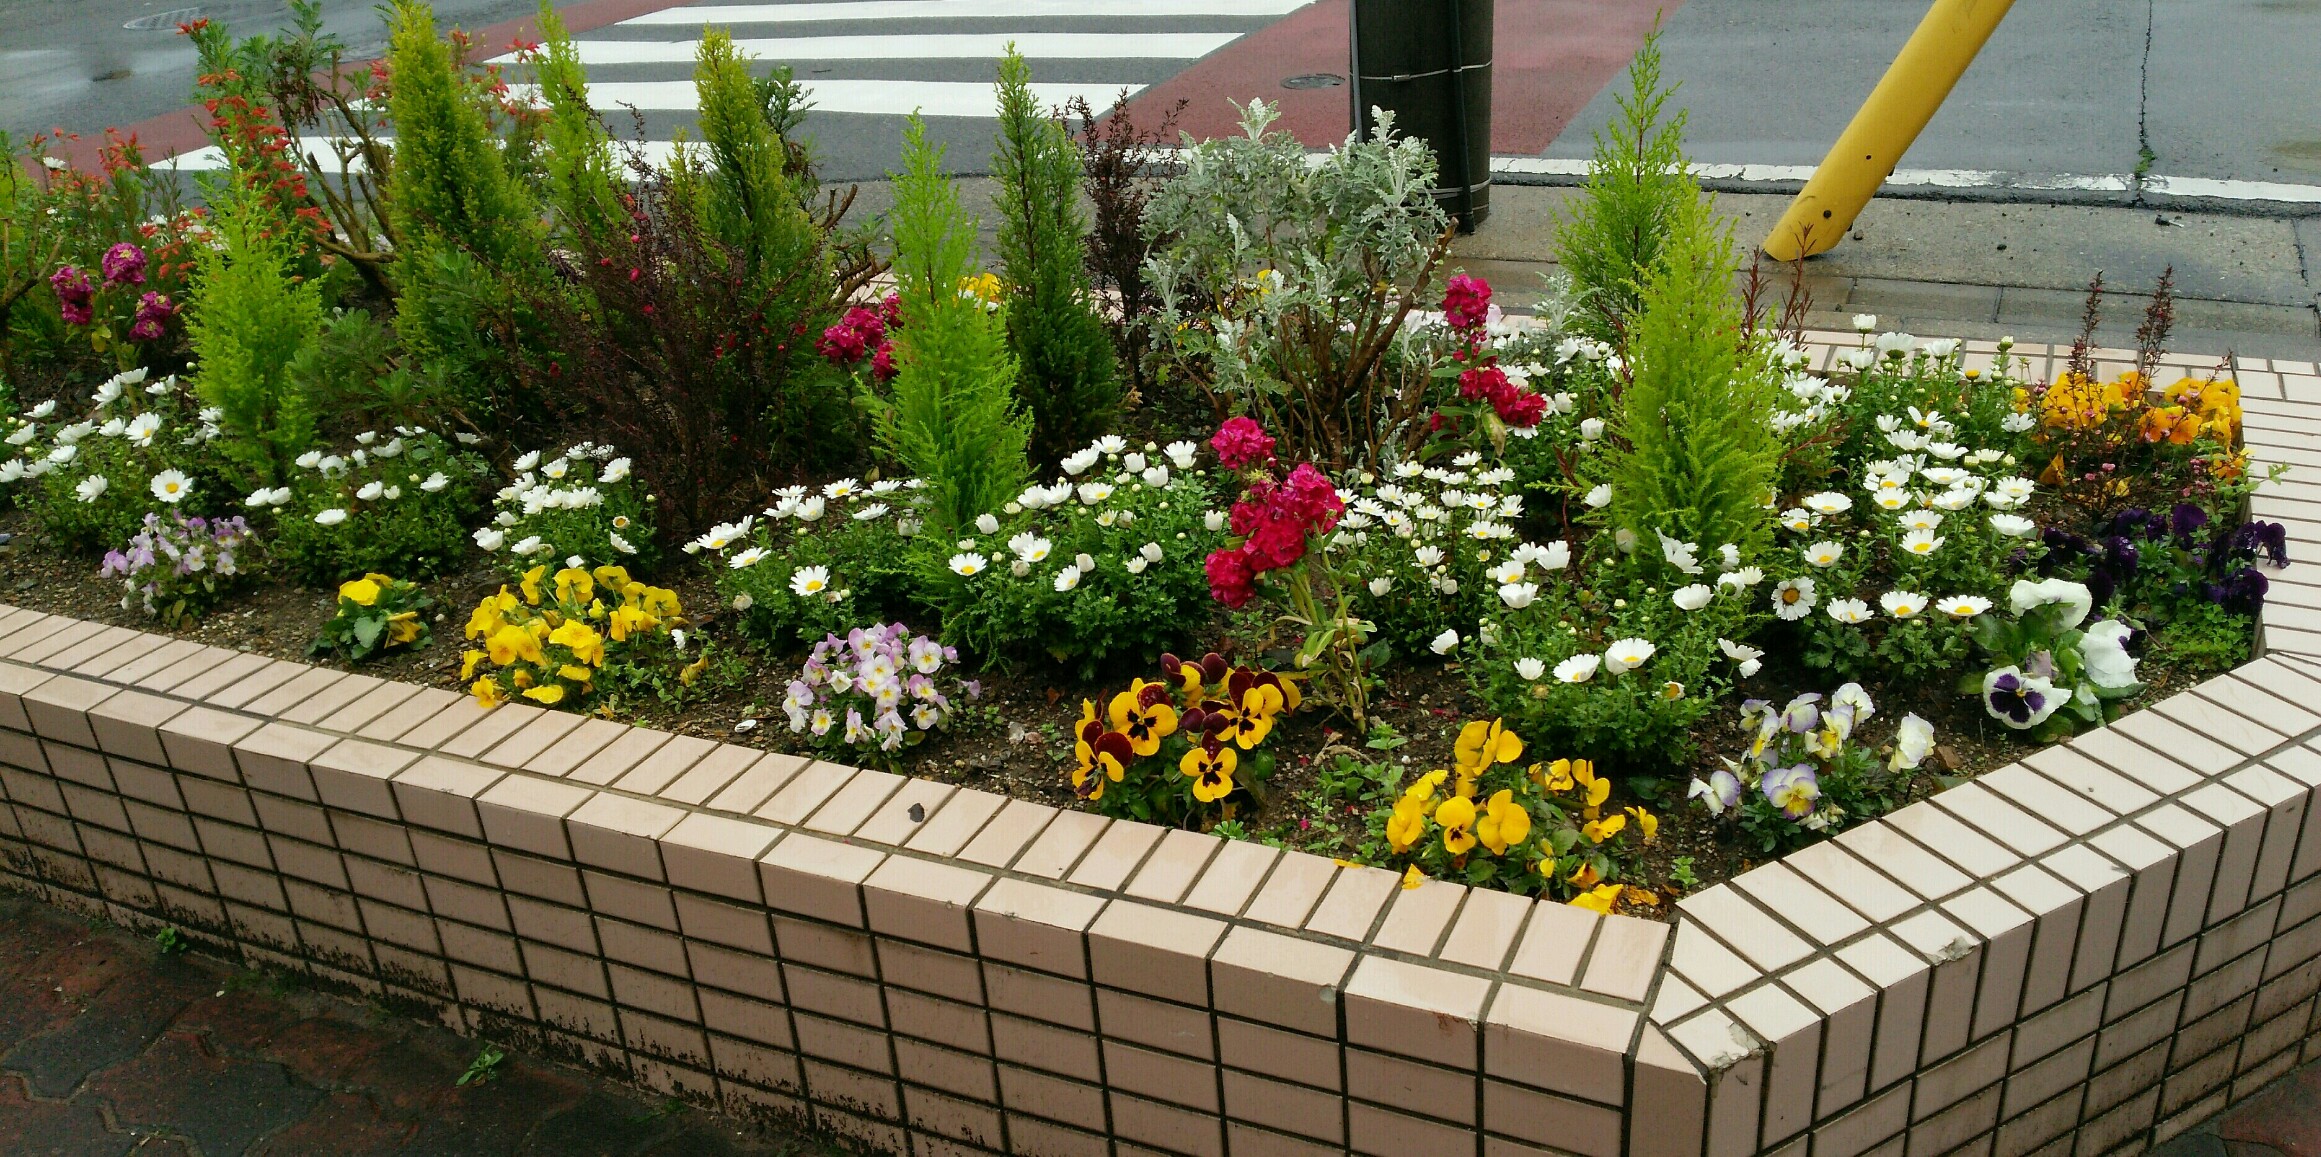 名古屋斎場見学会の模様をお伝えします。花壇のお花も満開です。